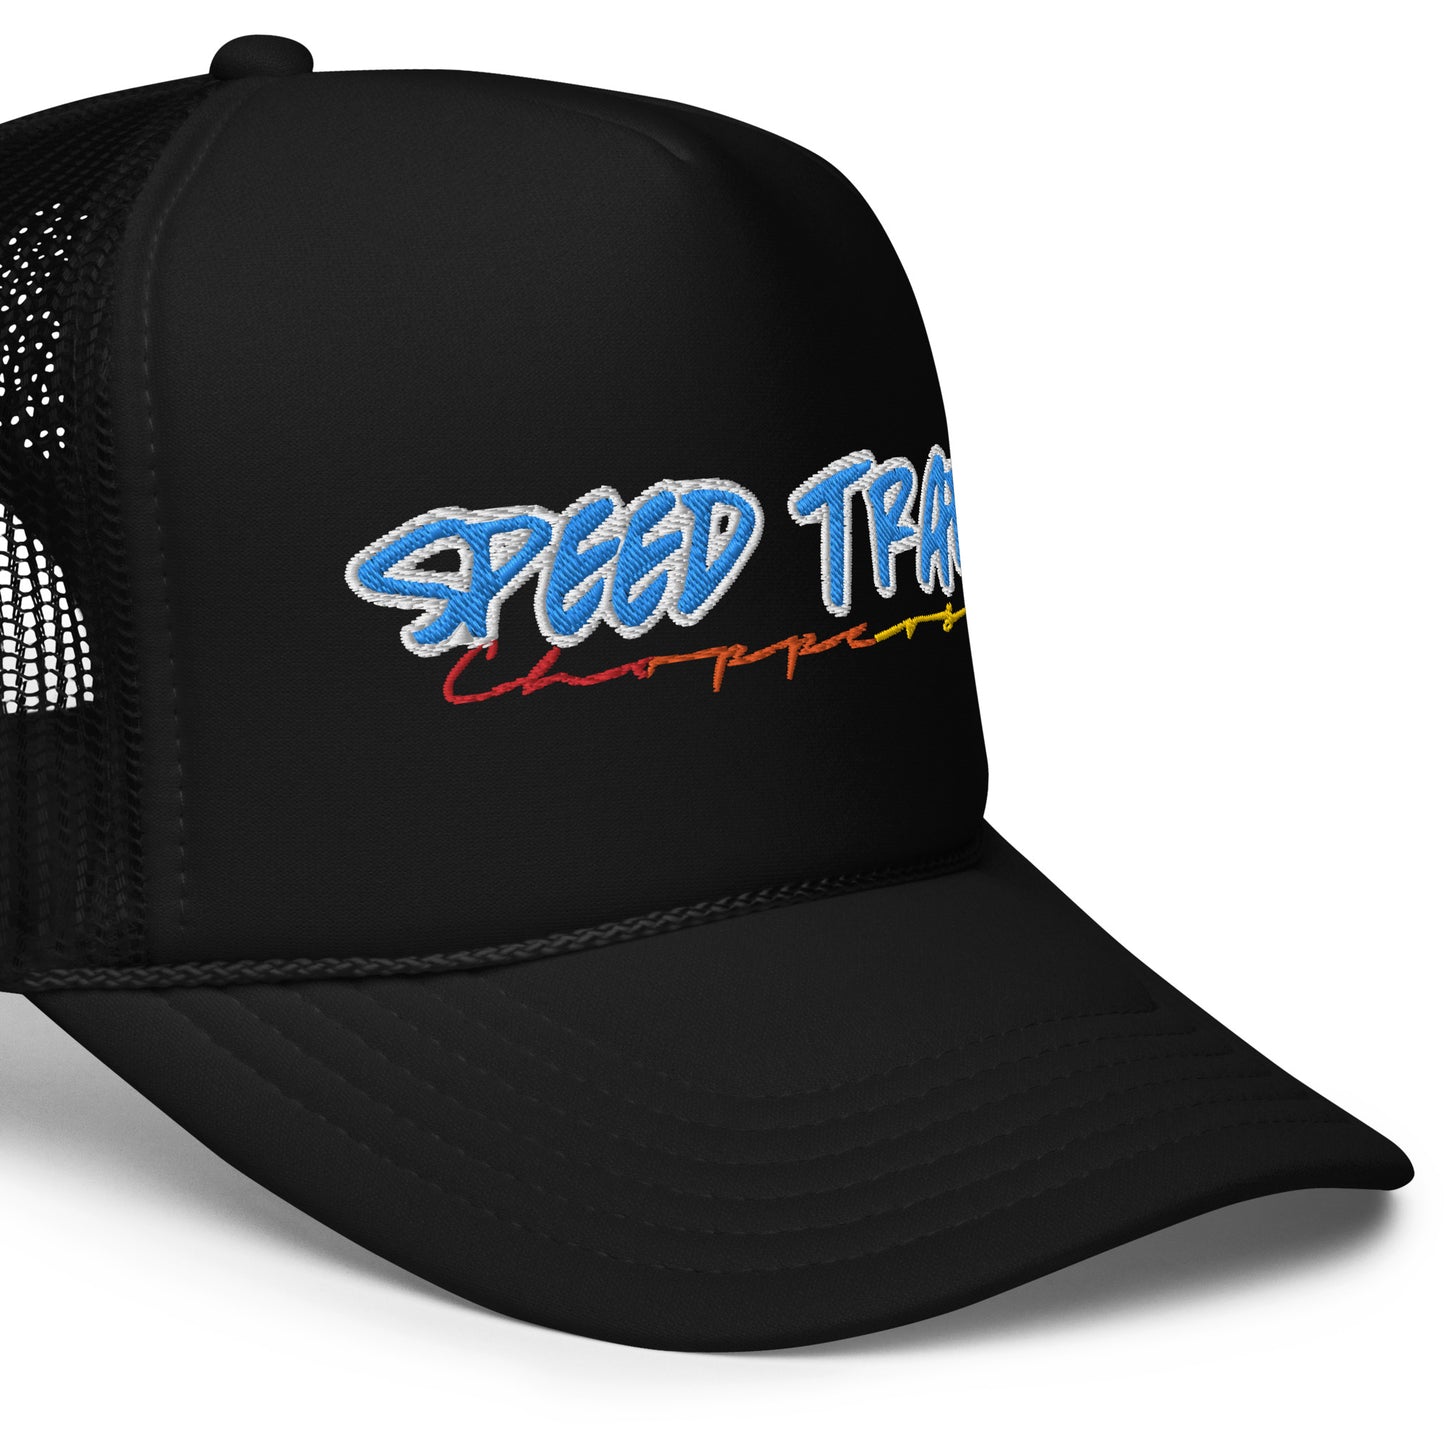 STC “City” Foam trucker hat